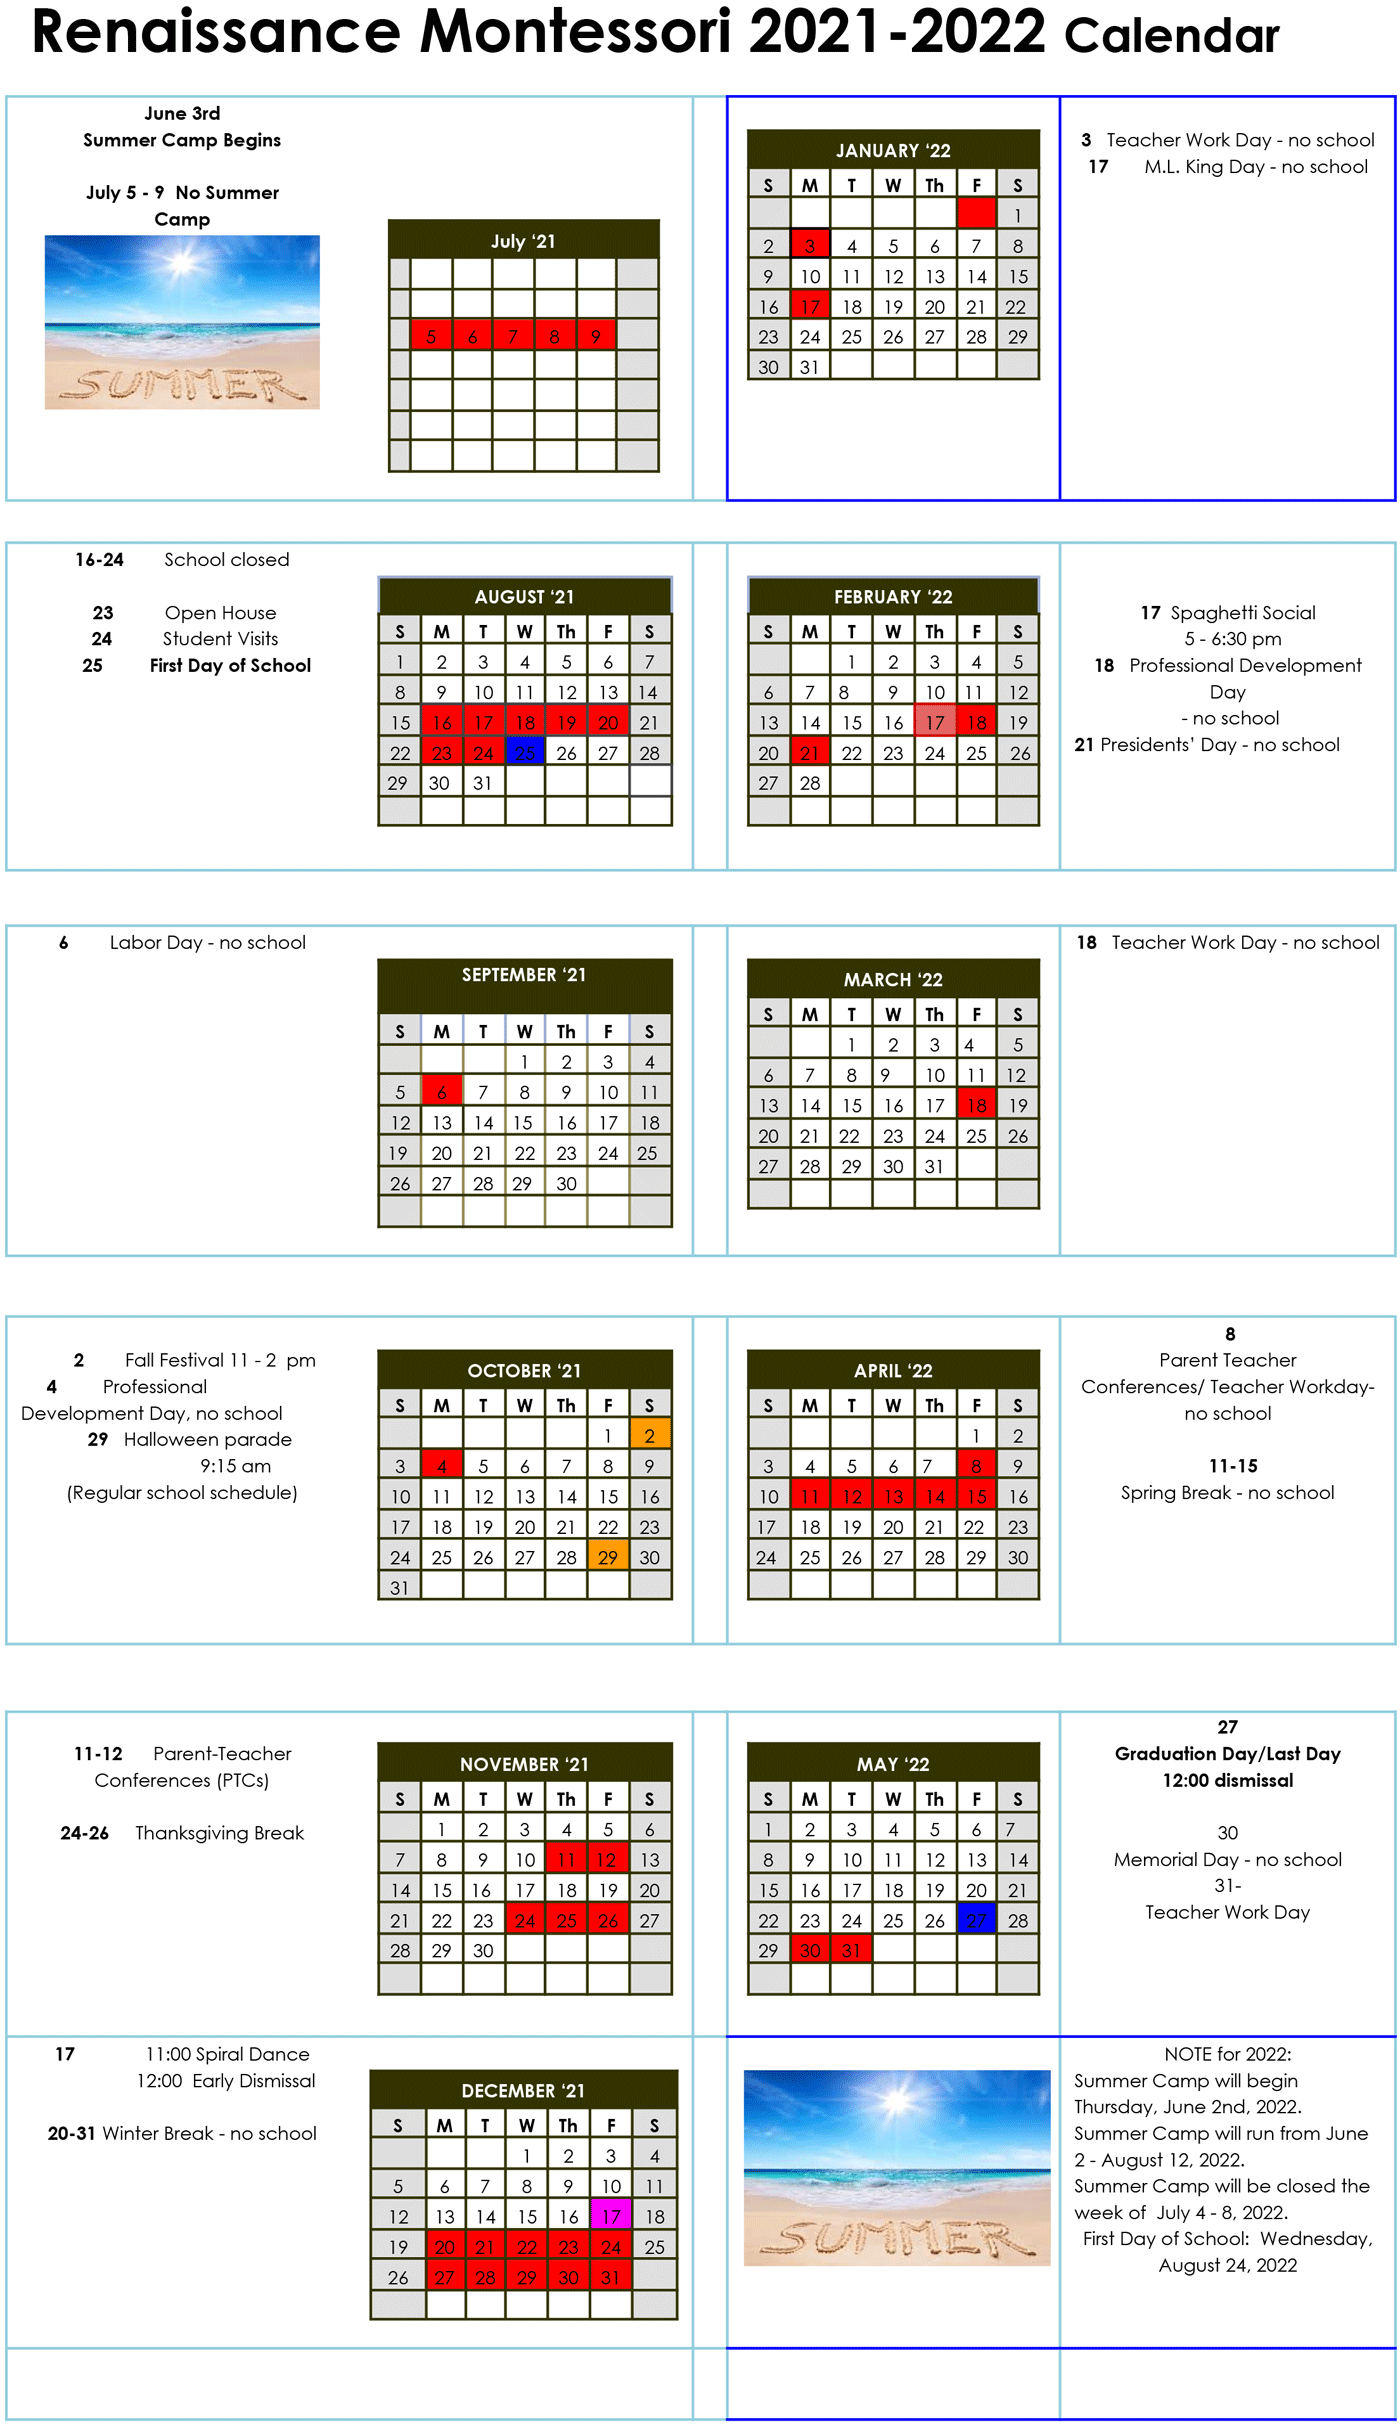 Uncg Spring Semester 2022 Calendar - academic calendar 2022